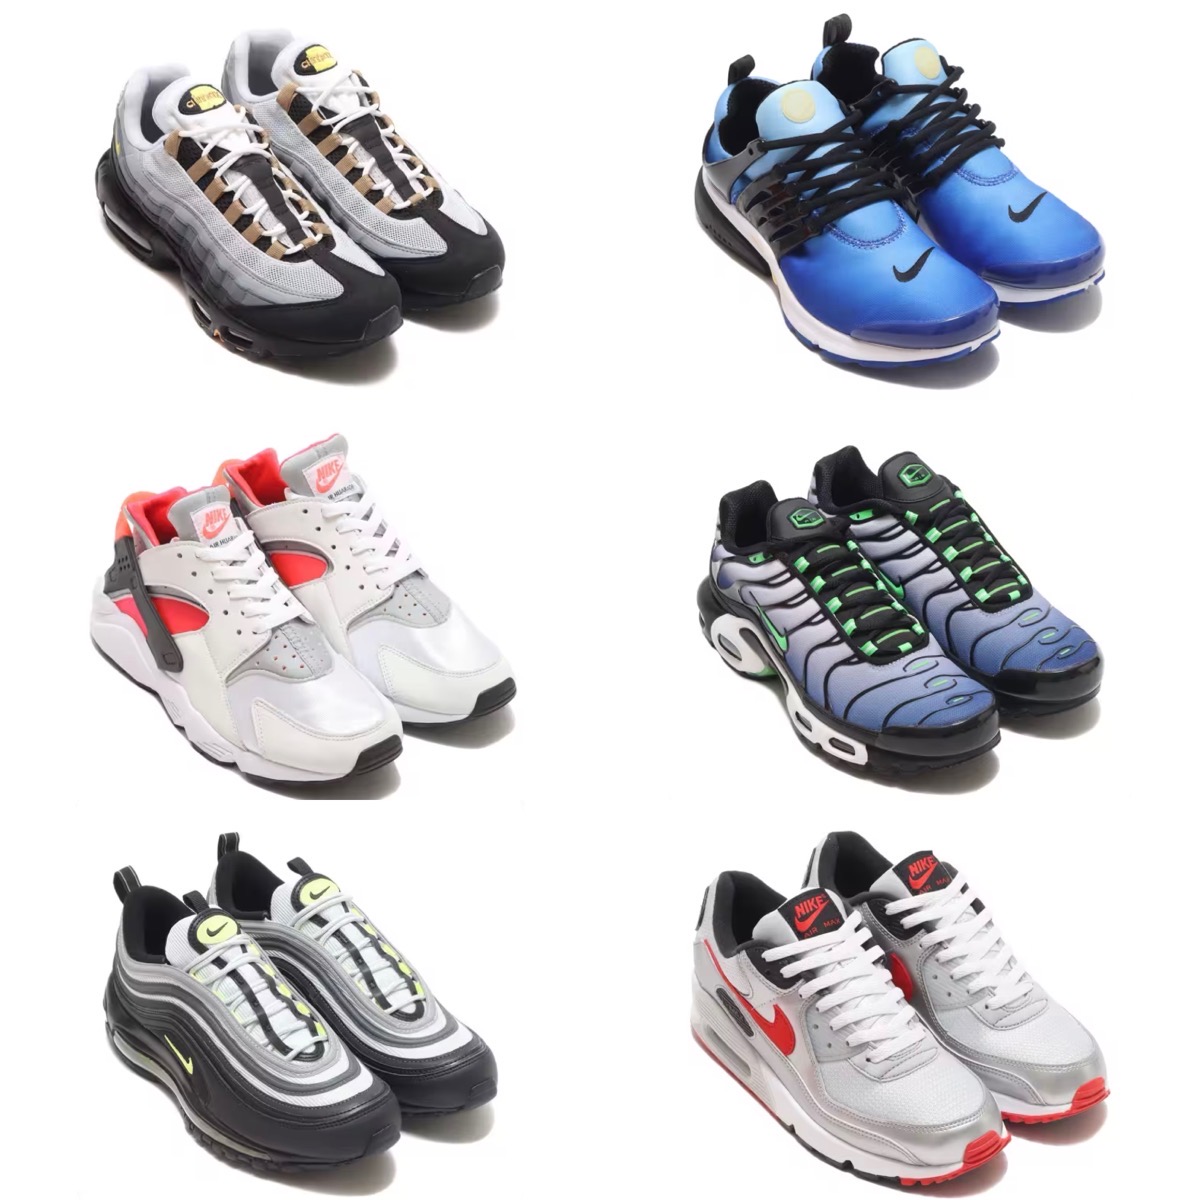 歴史を彩る6つのモデルを織り交ぜた Nike “Icon Flip” Collectionが ...